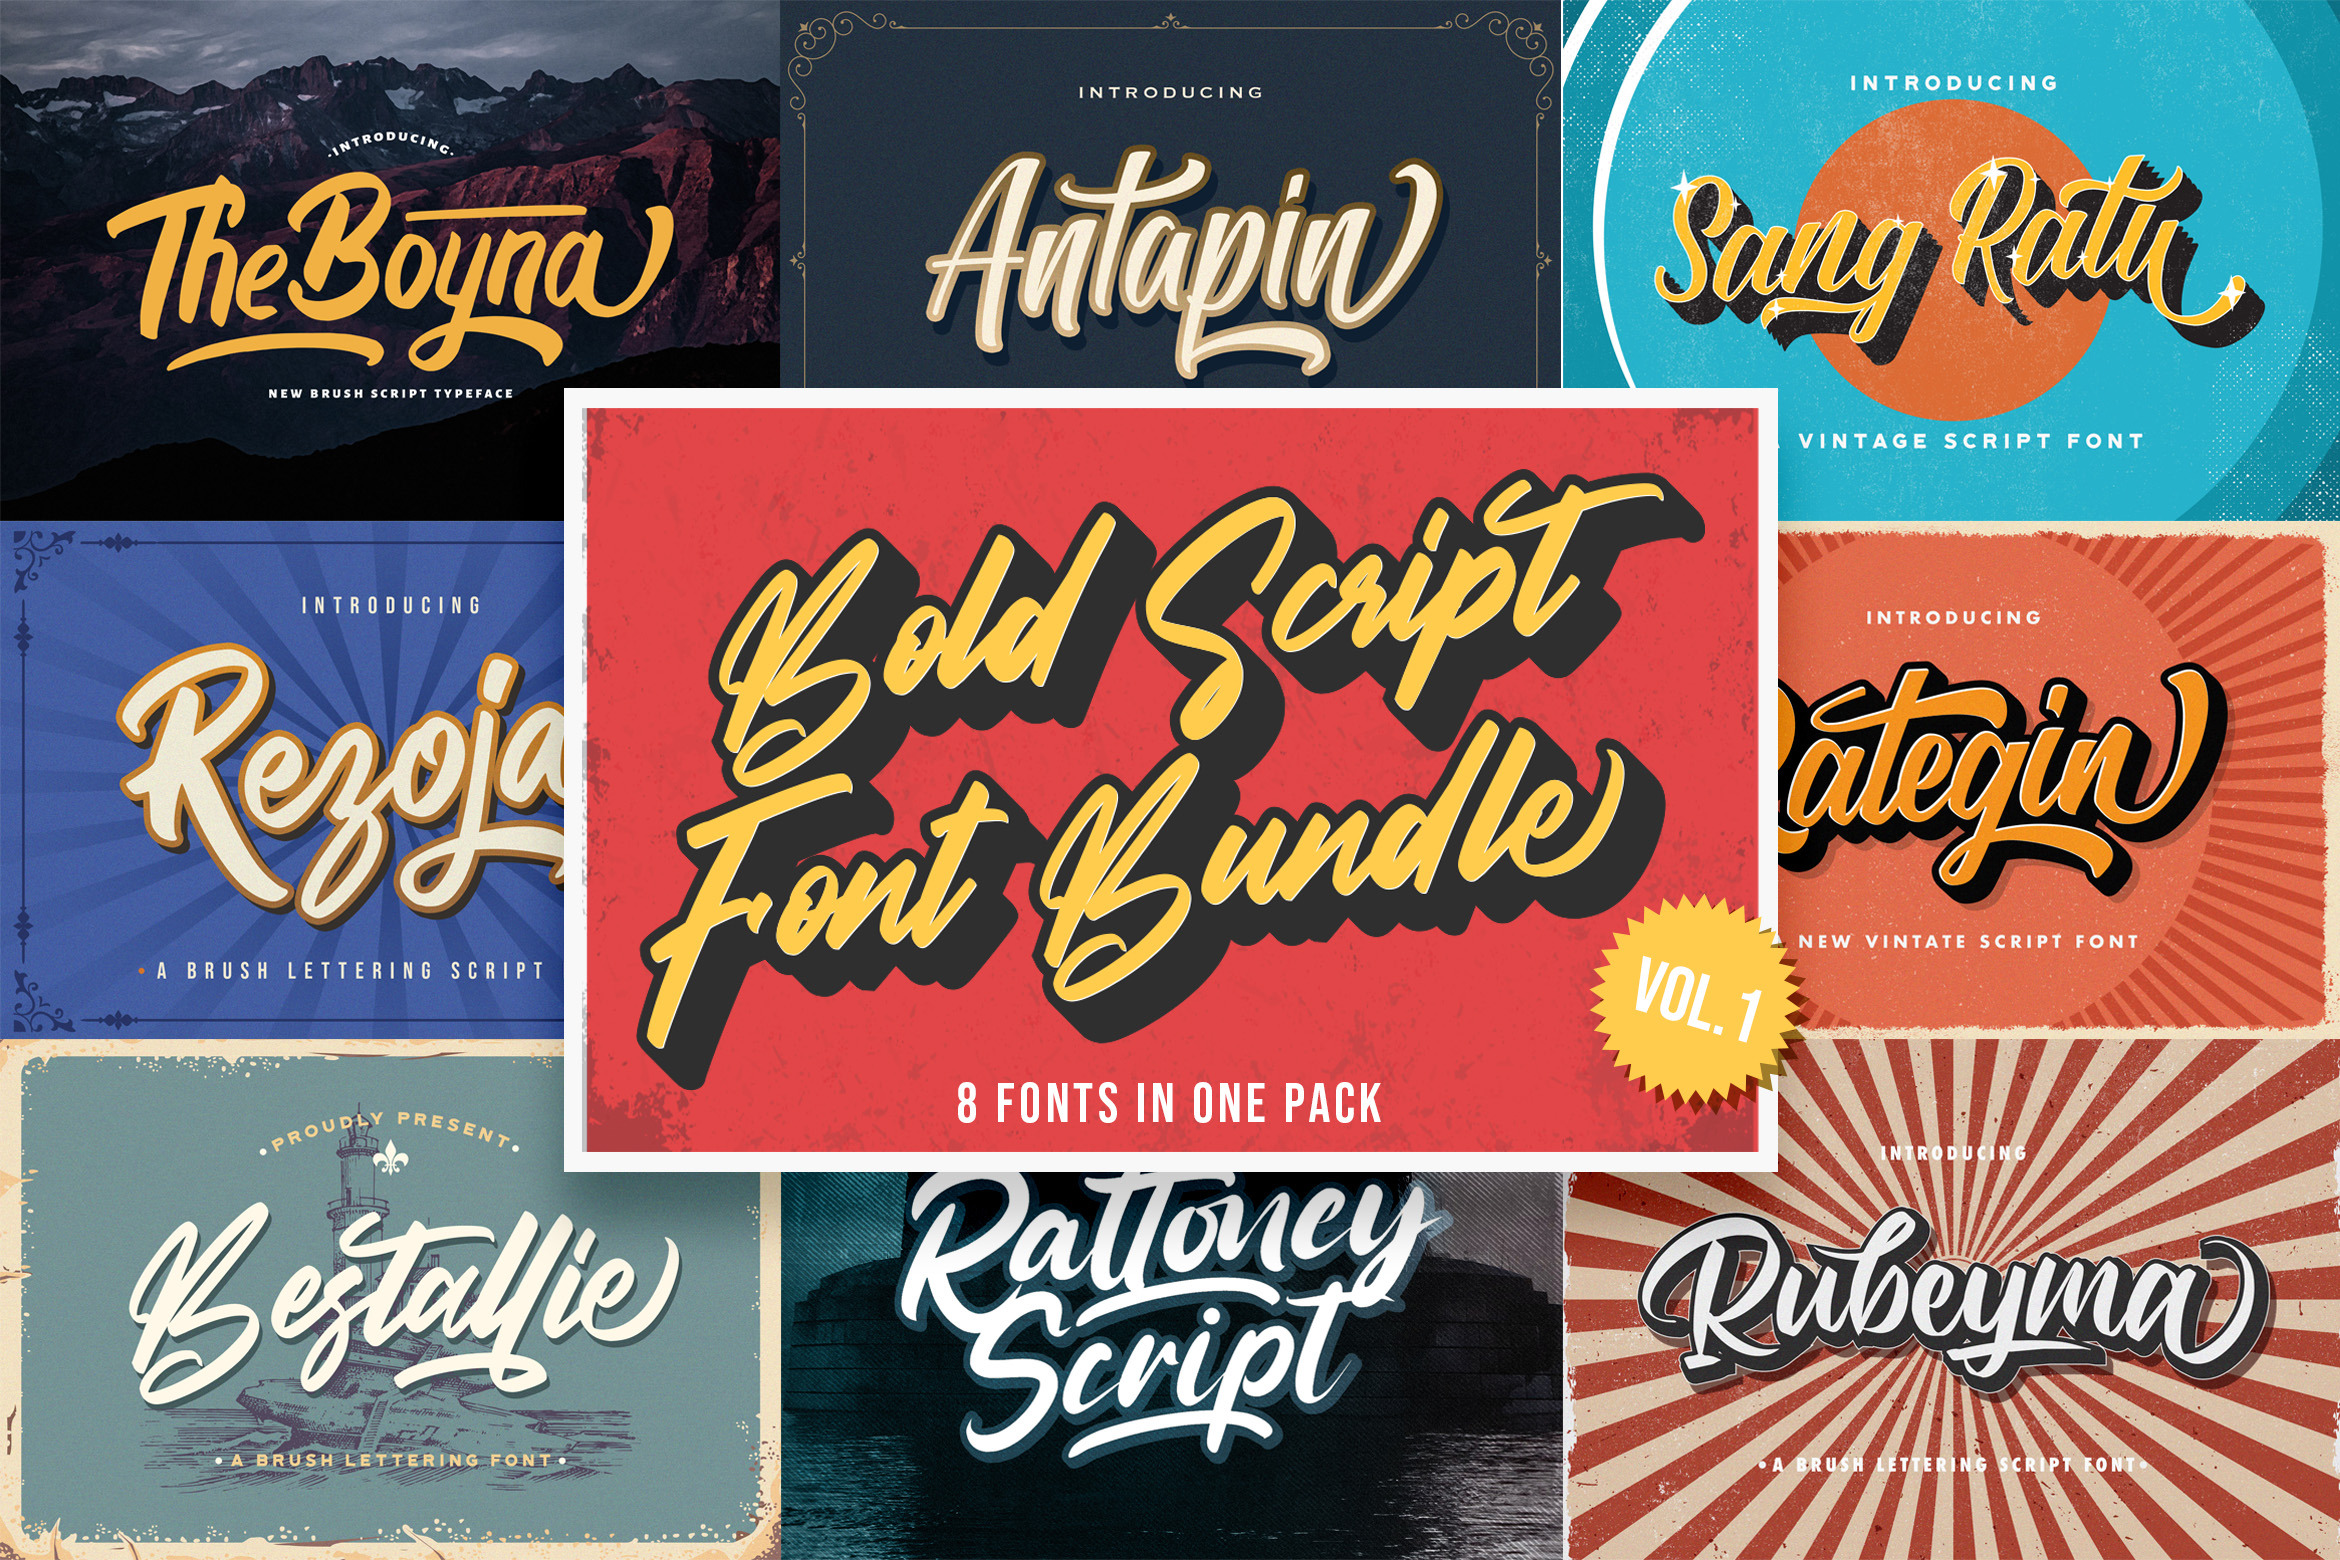 Bold Script Font Bundle Vol 1 | Script fonts ~ Creative Market